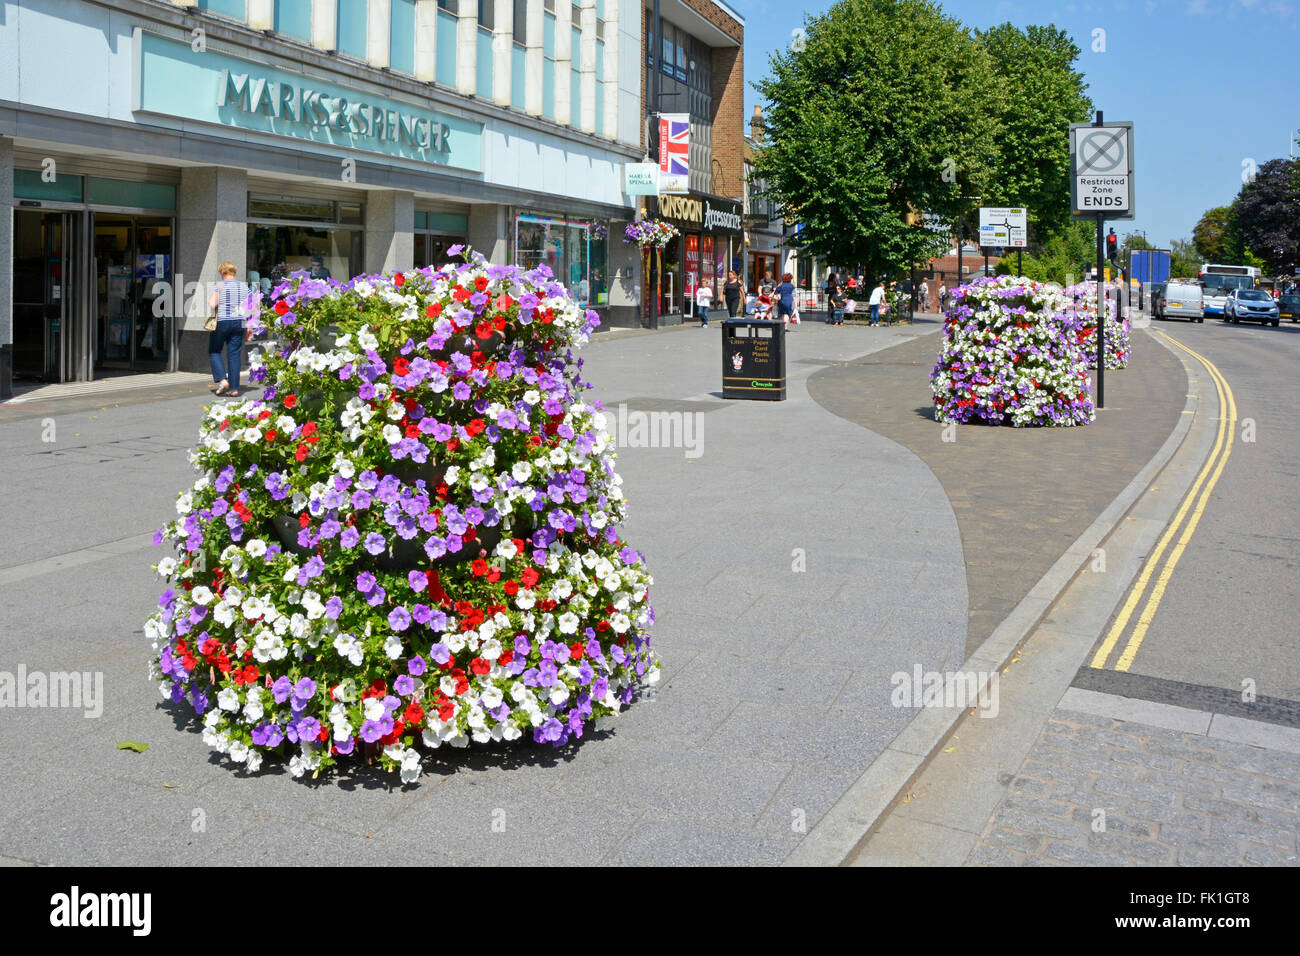 Brentwood Stadtzentrum shopping High Street breiten Bürgersteig mit Sommerblume vor Marks & Spencer Shop Blumen durch Gemeinderat anzeigen Stockfoto